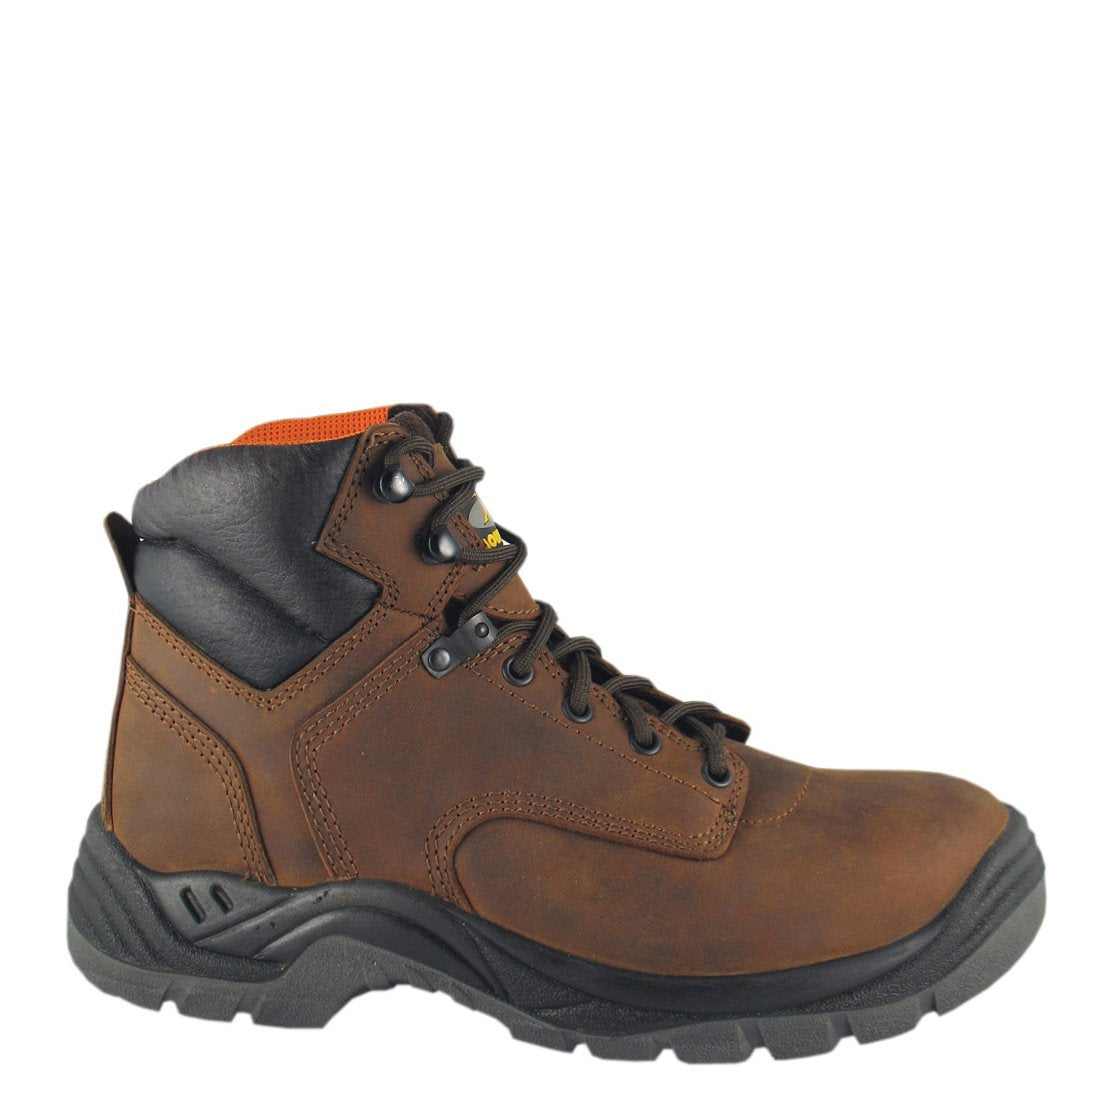 Smoky Mountain Men's Brown Waterproof Work Shoe W/Steel Toe